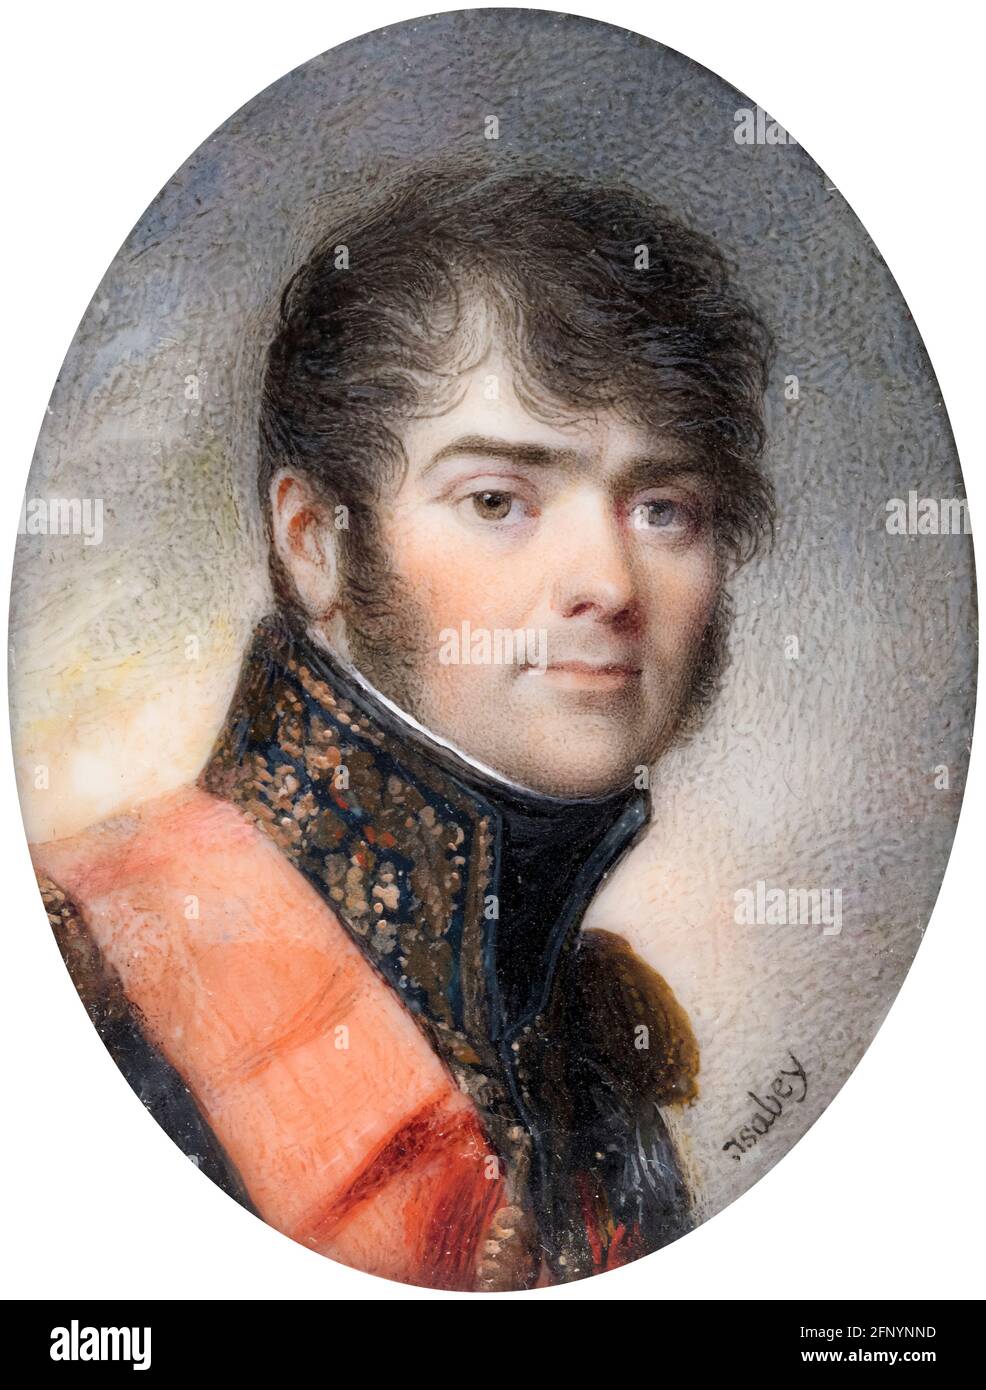 Henri-Gatien, comte Bertrand (1773-1844), war ein französischer General, Porträtminiatur von Jean Baptiste Isabey, 1808 Stockfoto